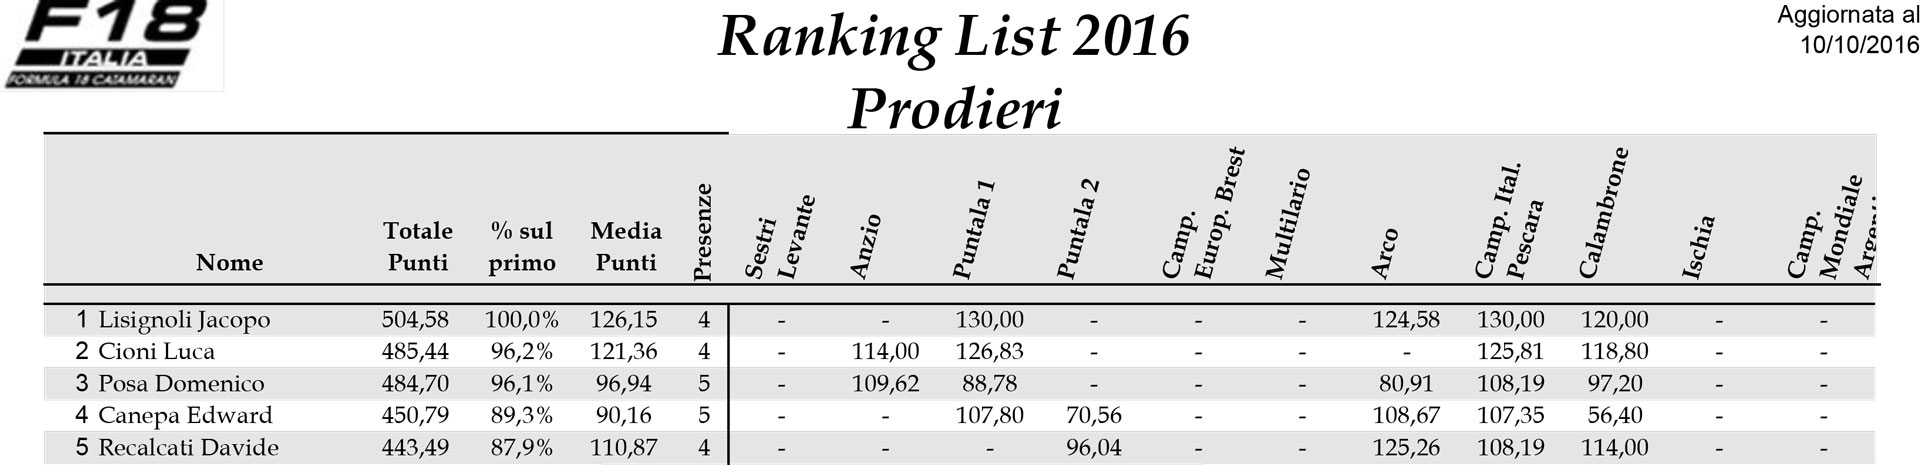 ranking-list-f18-2016-prodieri